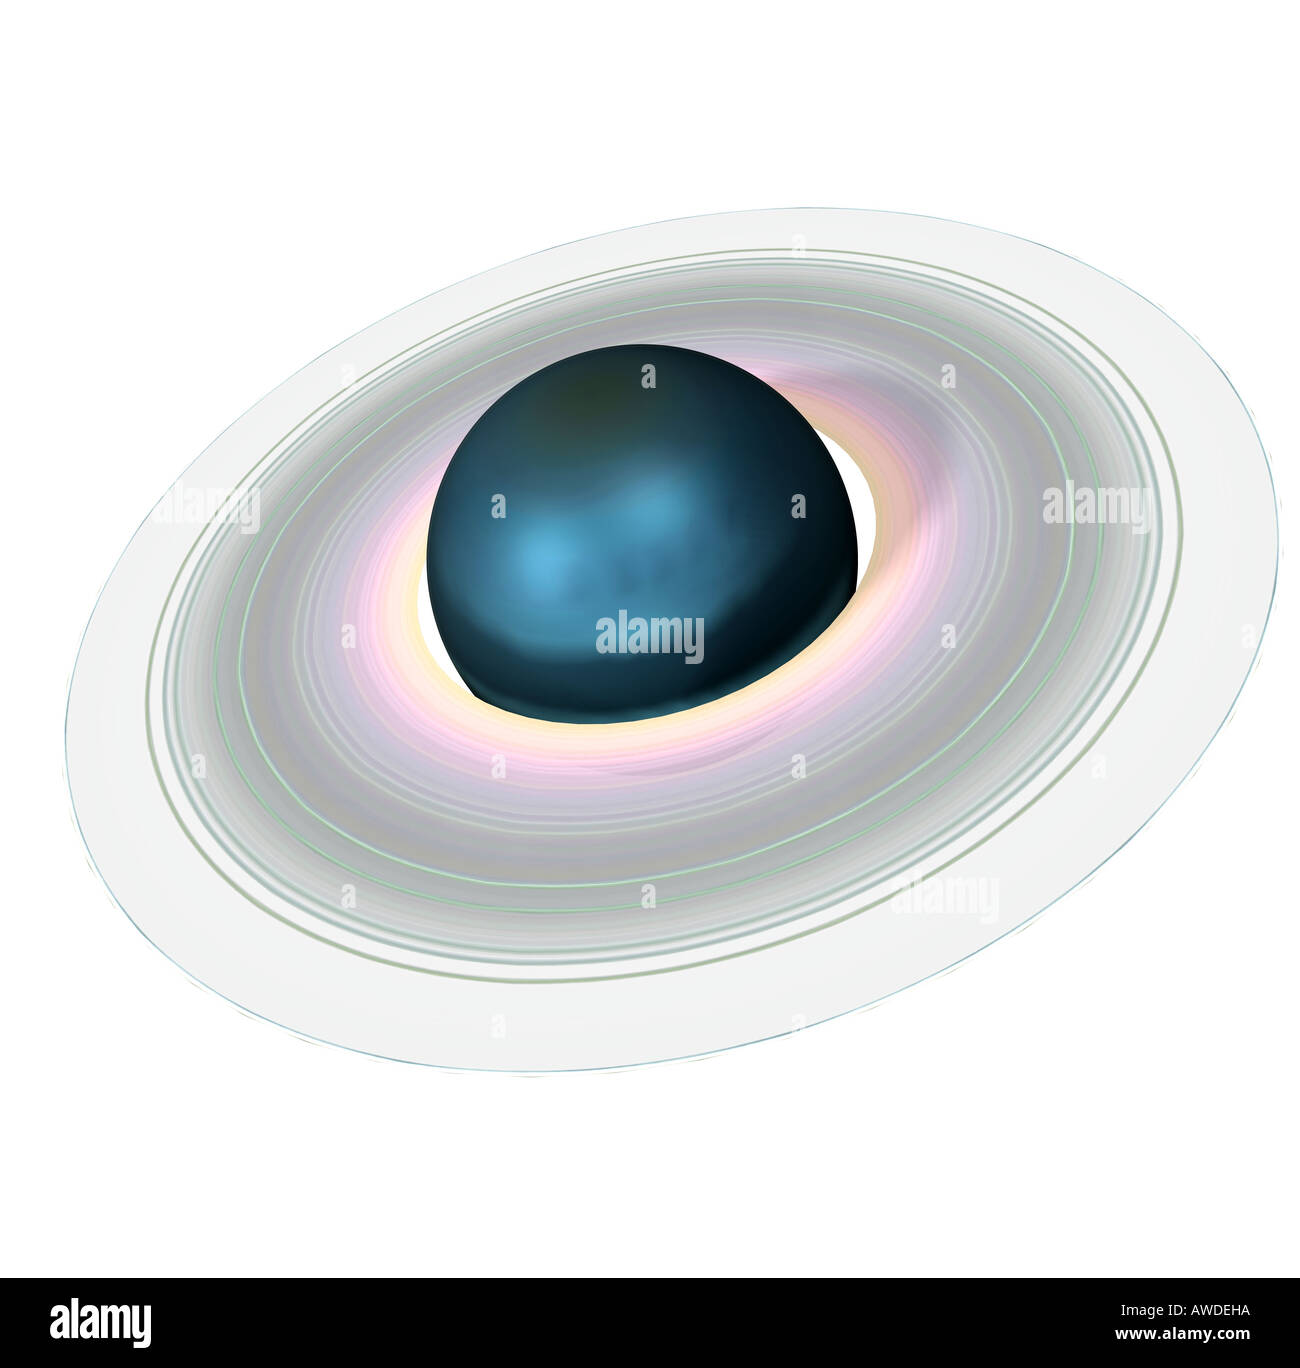 82,000+ Planet Uranus Ring Pictures